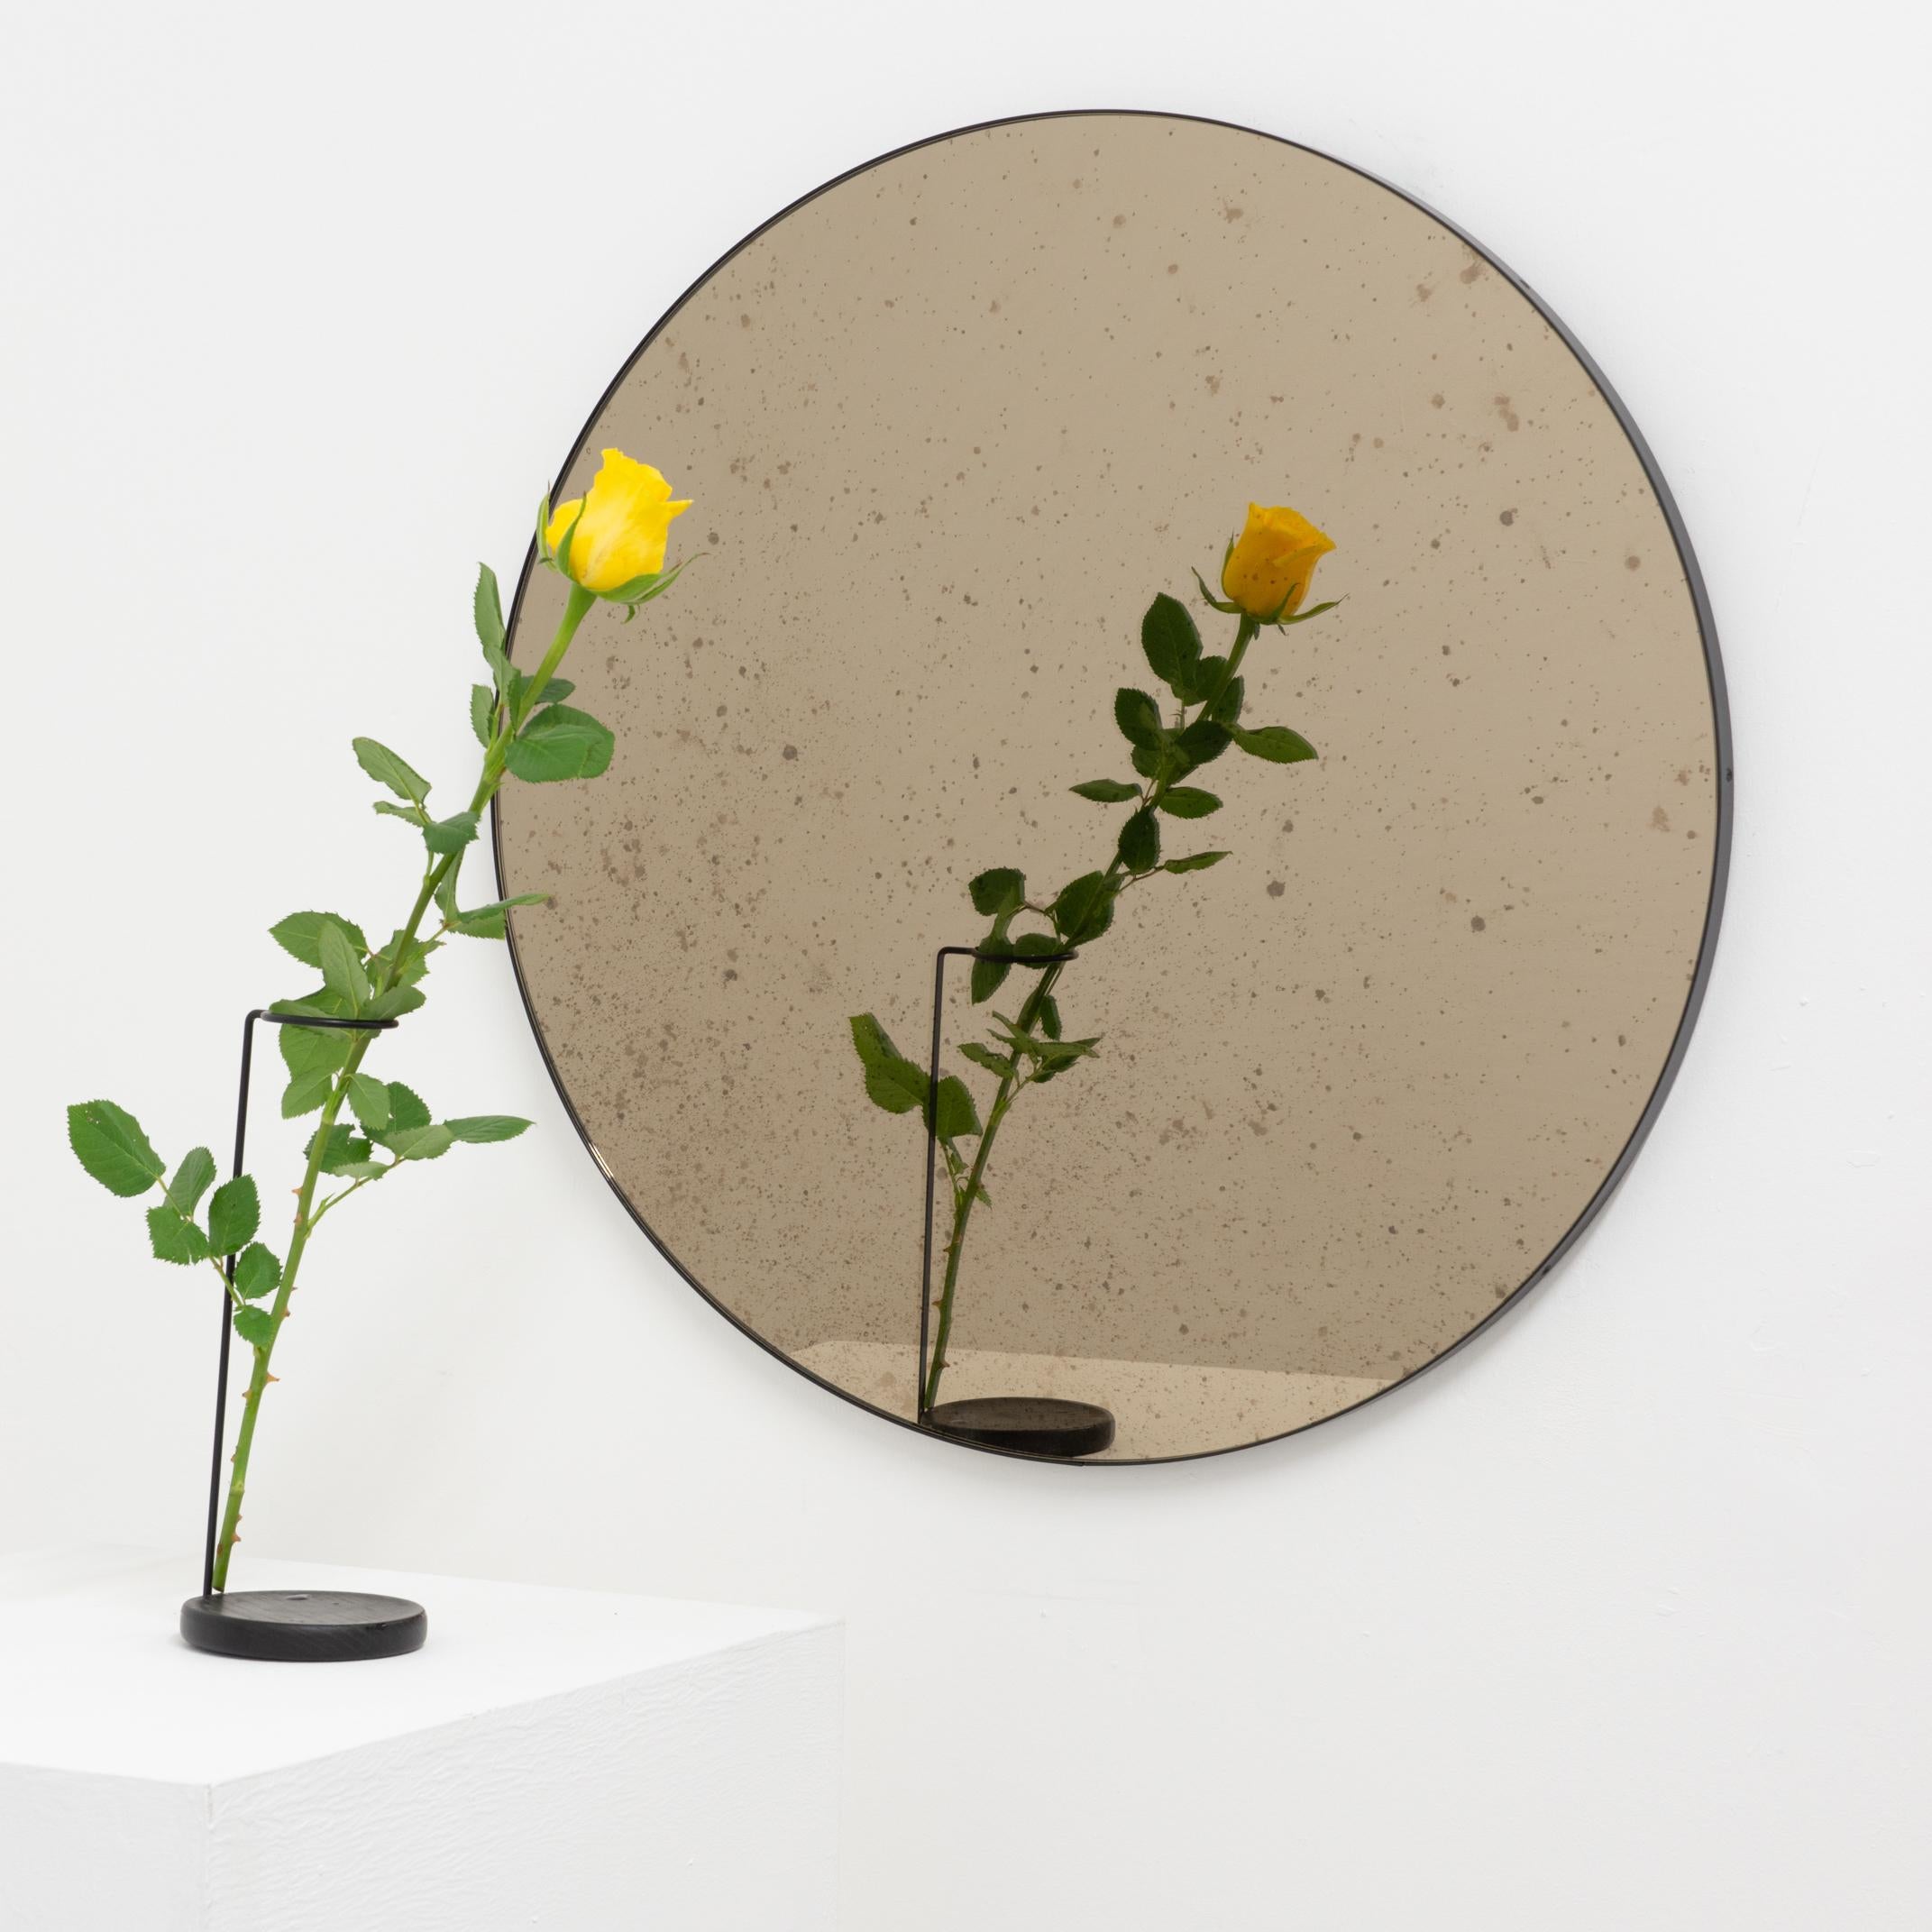 Ravissant miroir rond Orbis™ antiquité teinté de bronze avec un cadre minimaliste en aluminium noir revêtu de poudre. Conçu et fabriqué à la main à Londres, au Royaume-Uni.

Les miroirs de taille moyenne, grande et extra-large (60, 80 et 100 cm)